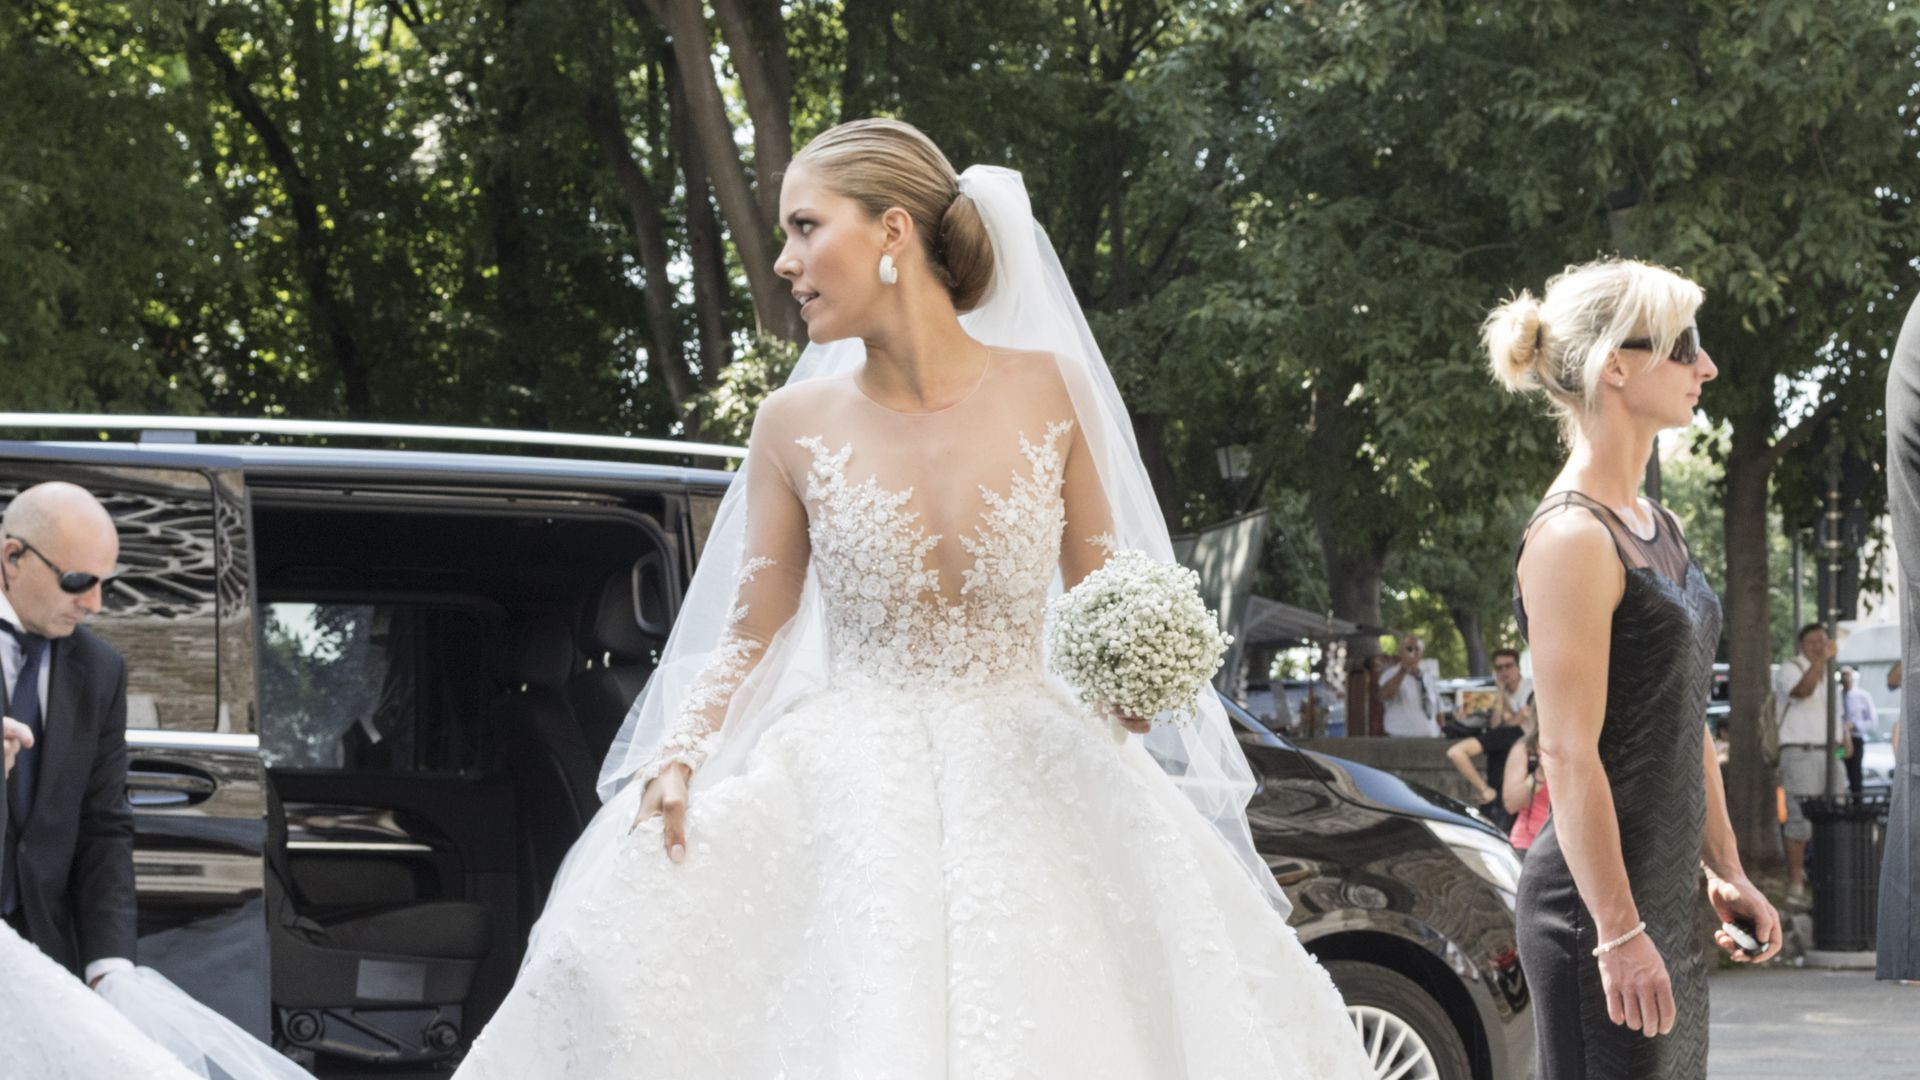 Swarovski Hochzeitskleid
 Weißer Traum ER steckt hinter Vicky Swarovskis Brautkleid